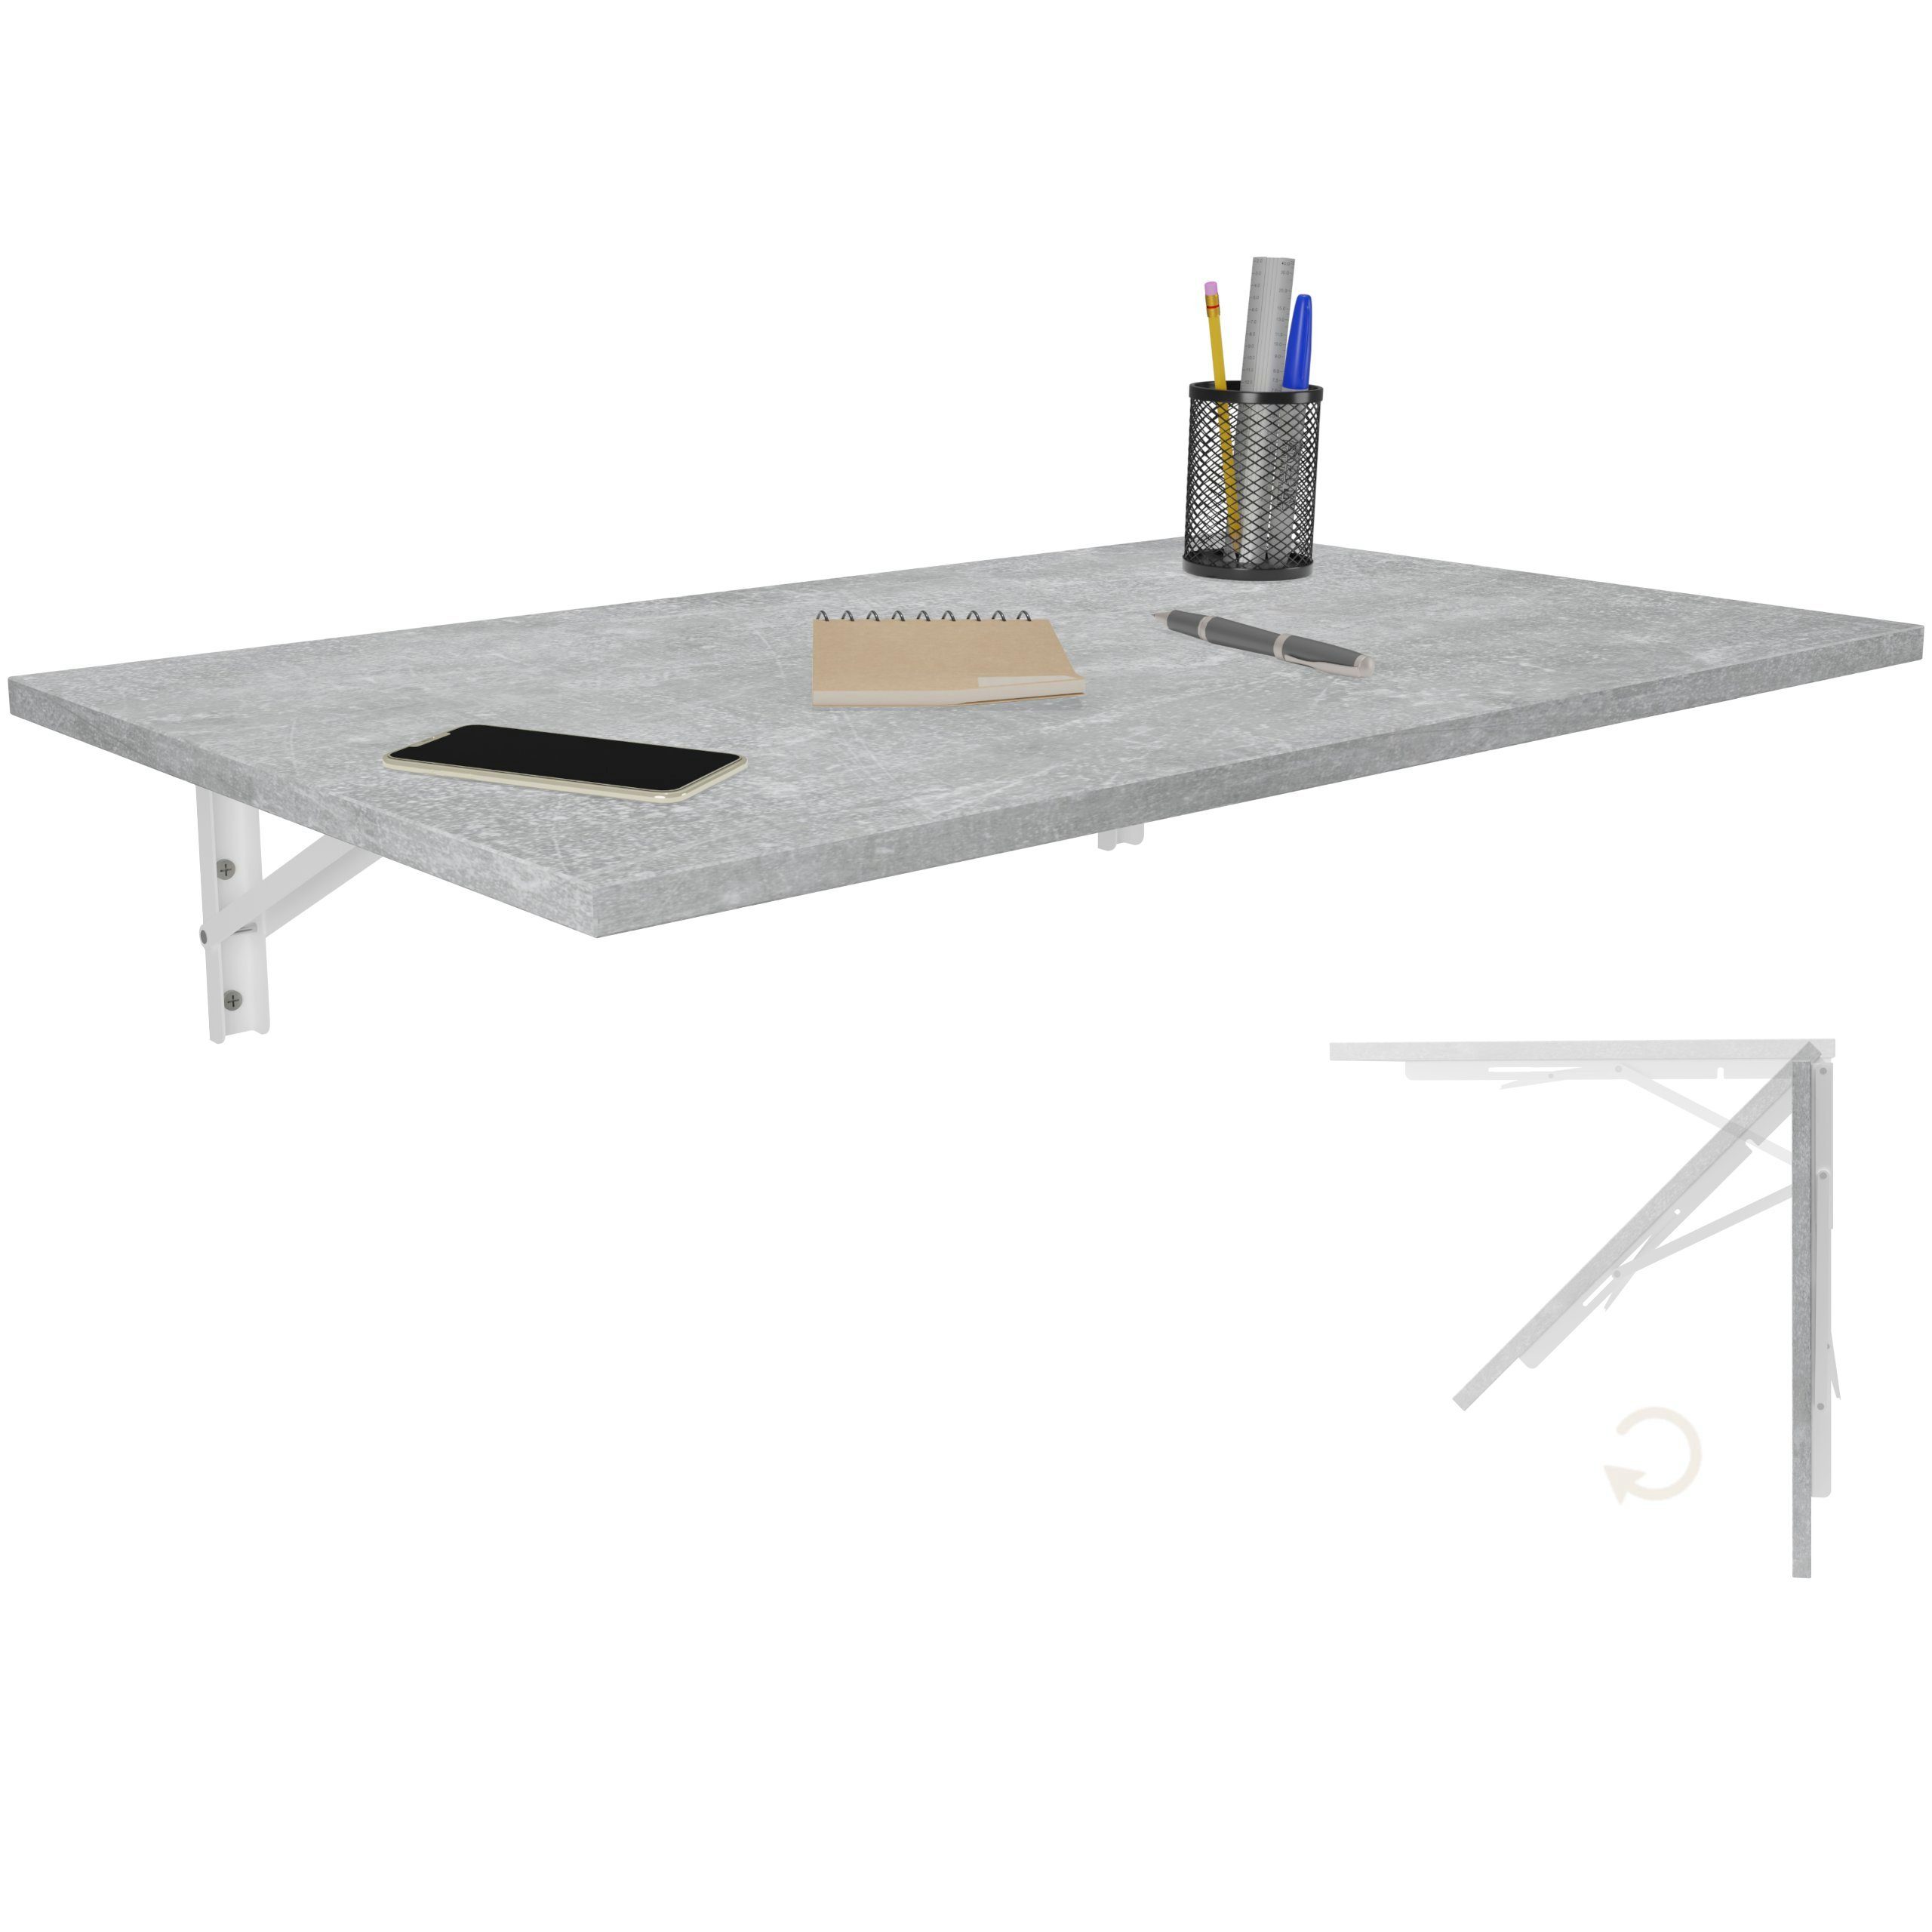 Küchentisch Schreibtisch Wand KDR Beton Esstisch Tisch, 80x50 Produktgestaltung Klapptisch Wandklapptisch